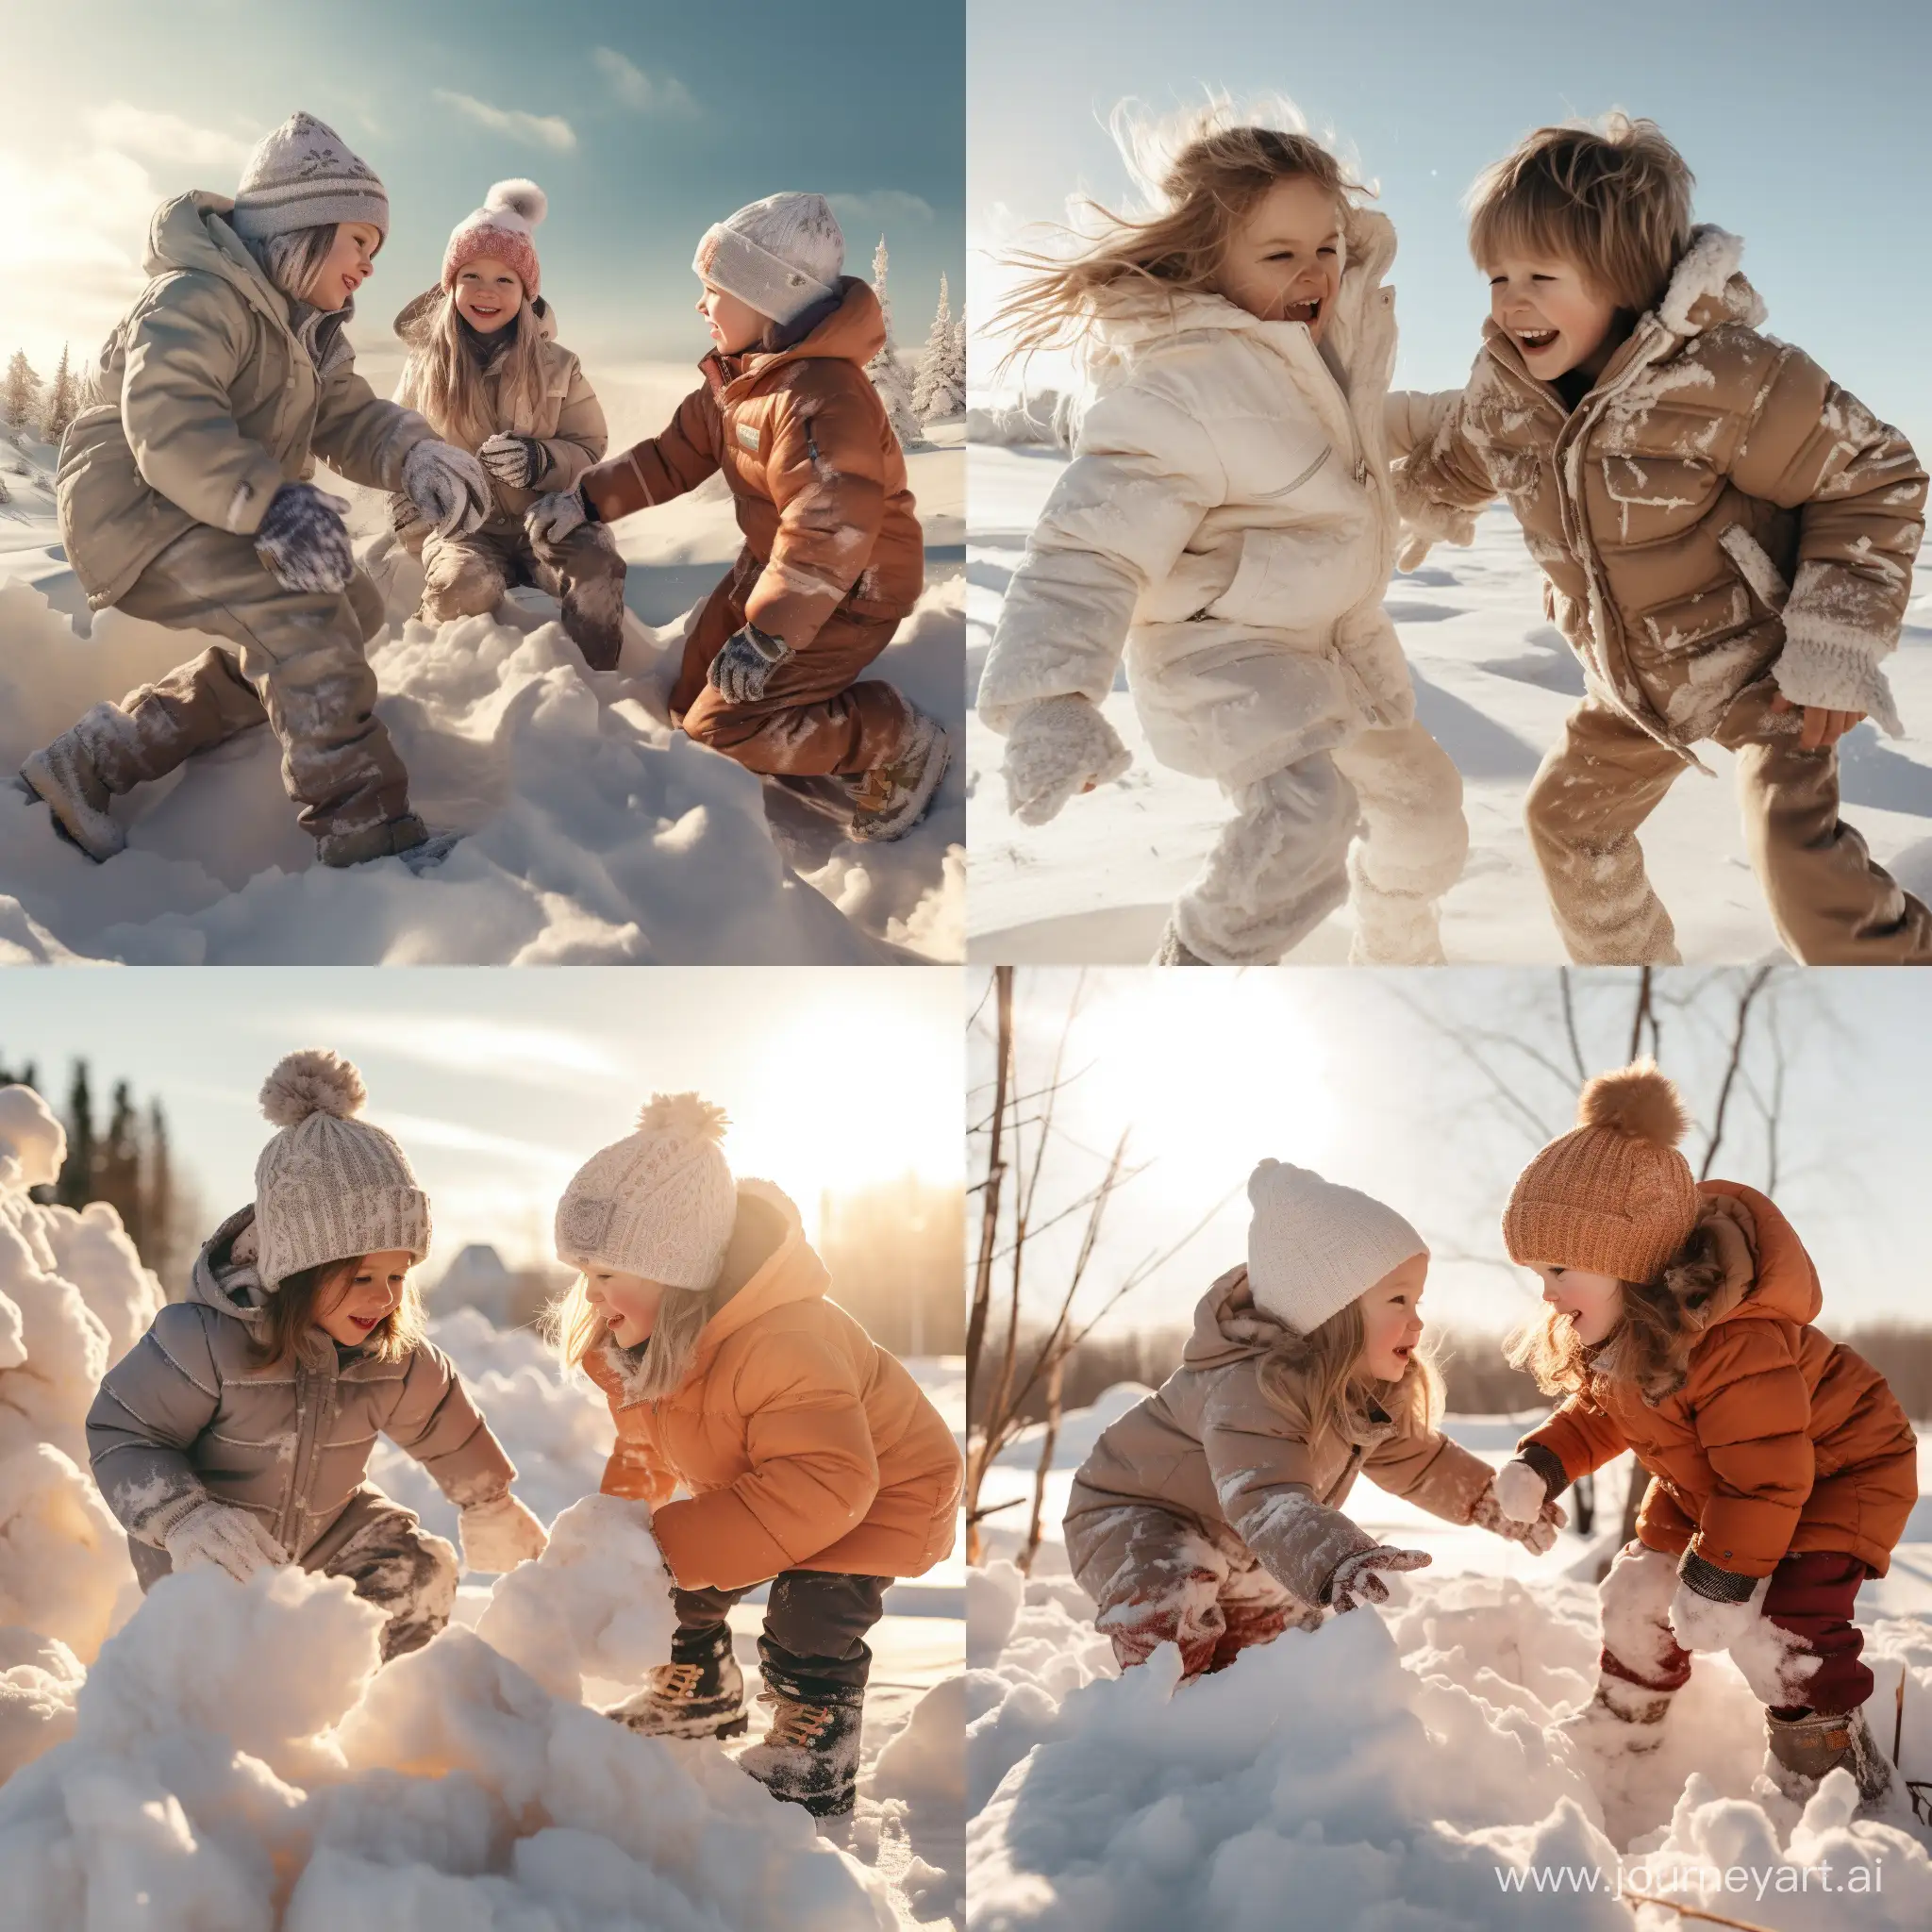 Дети в зимней одежде играю друг с другом в снежки и строят снежные крепости, солнечный зимний день, фотография, гиперреализм, высокое разрешение